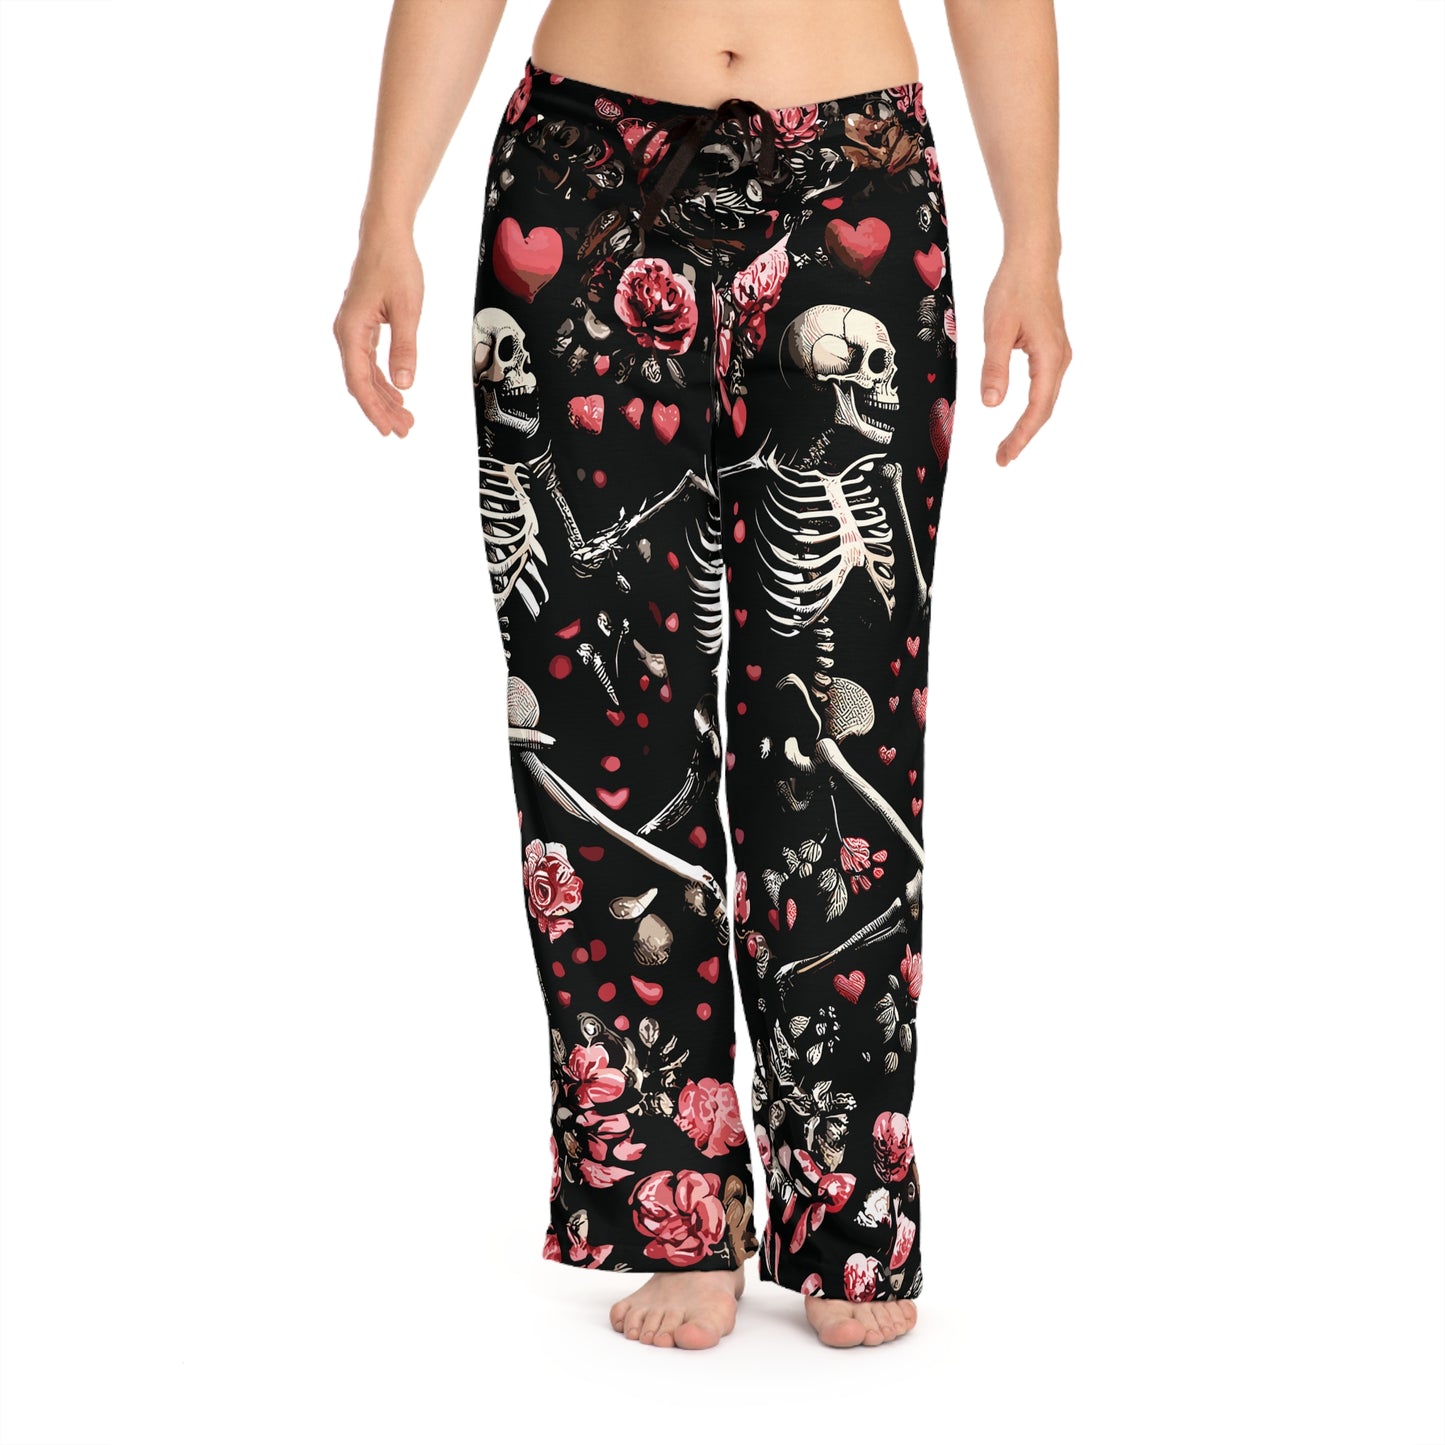 Gothic Skeleton Pajamas, Rose and Heart Print Sleepwear, Running